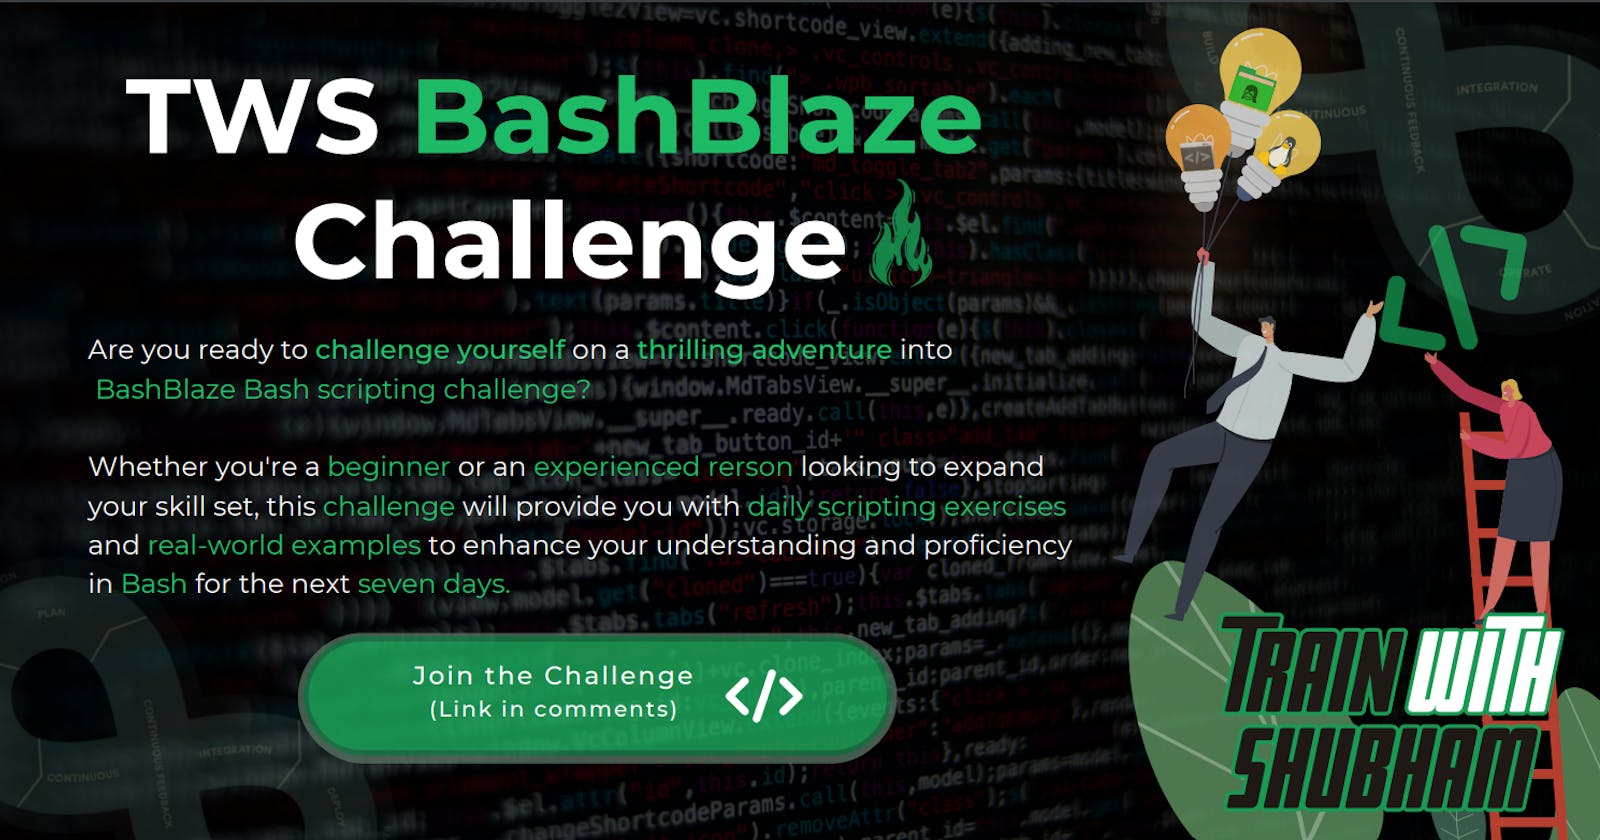 Day 1 of the Bash Scripting Challenge! 🚀 #TWSBashBlazeChallenge